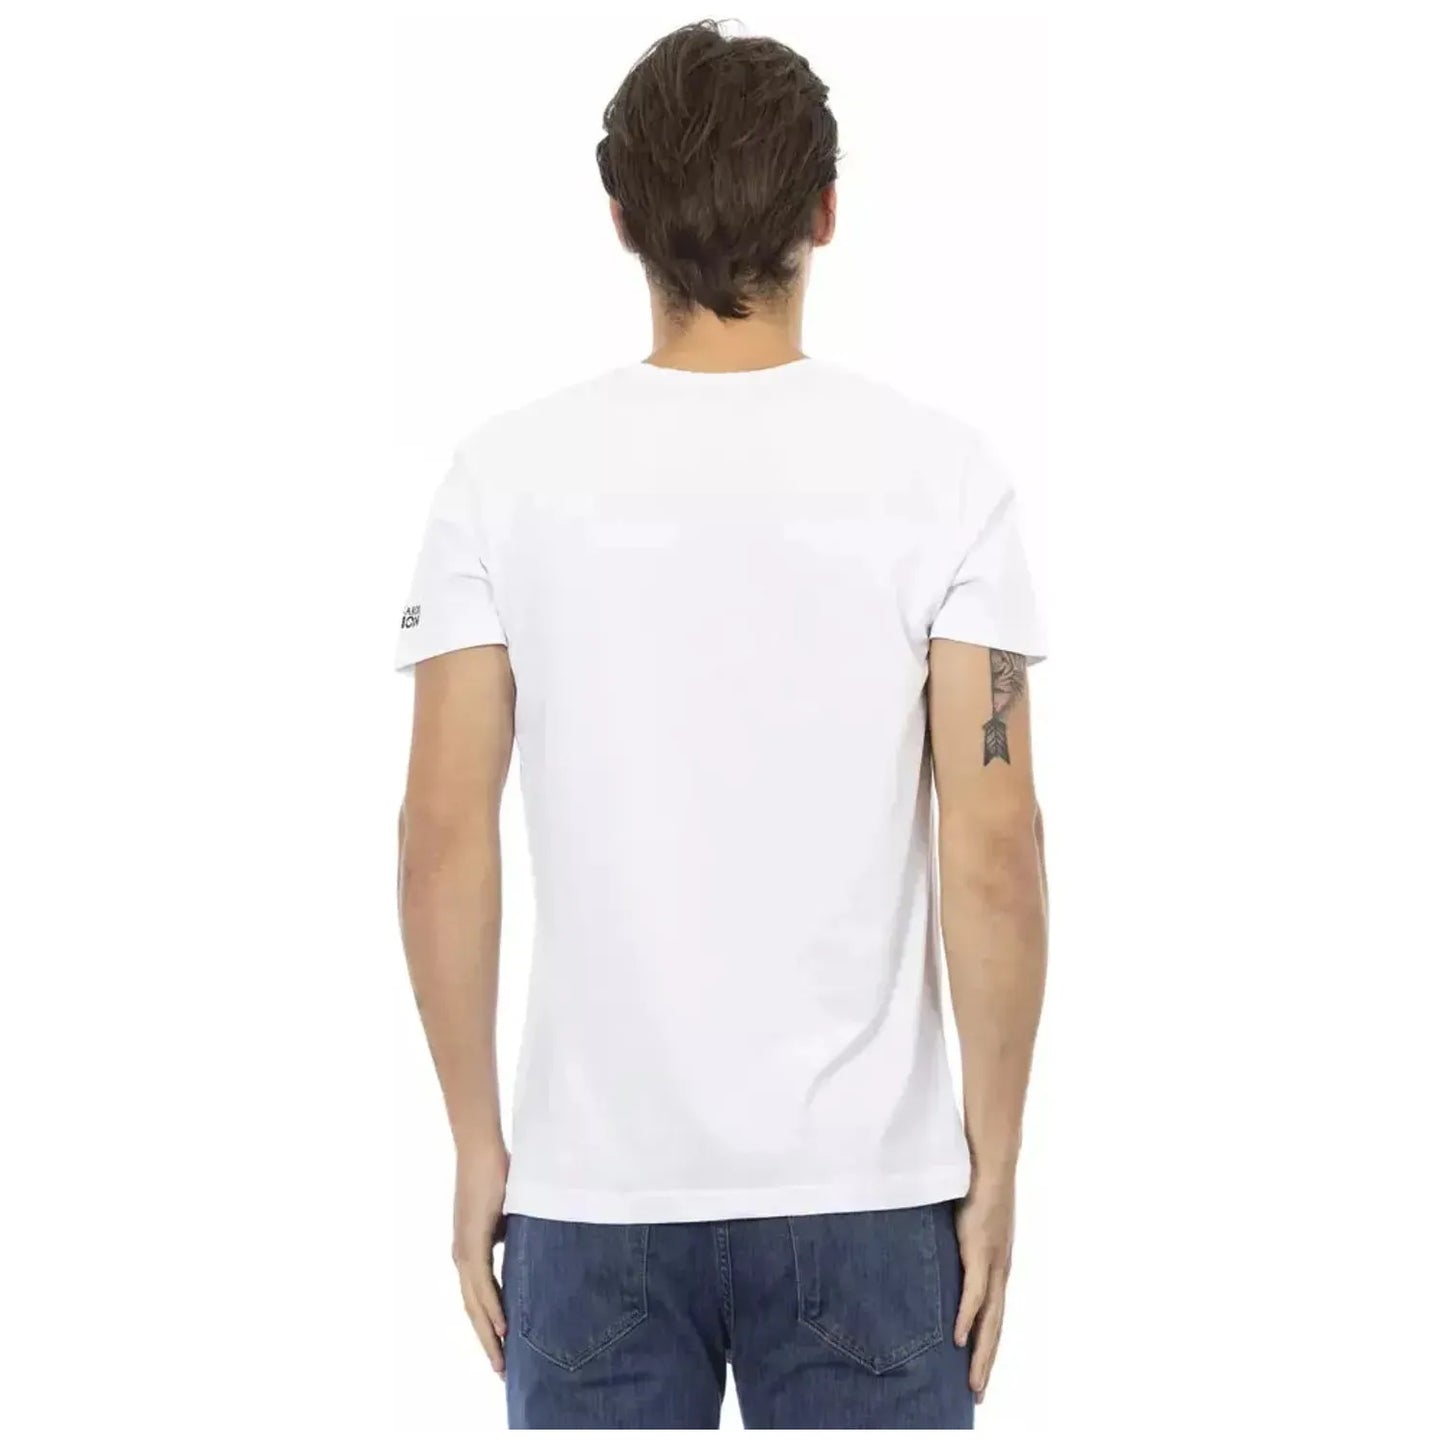 Trussardi Action Elegant White V-Neck Tee with Sleek Print white-cotton-t-shirt-79